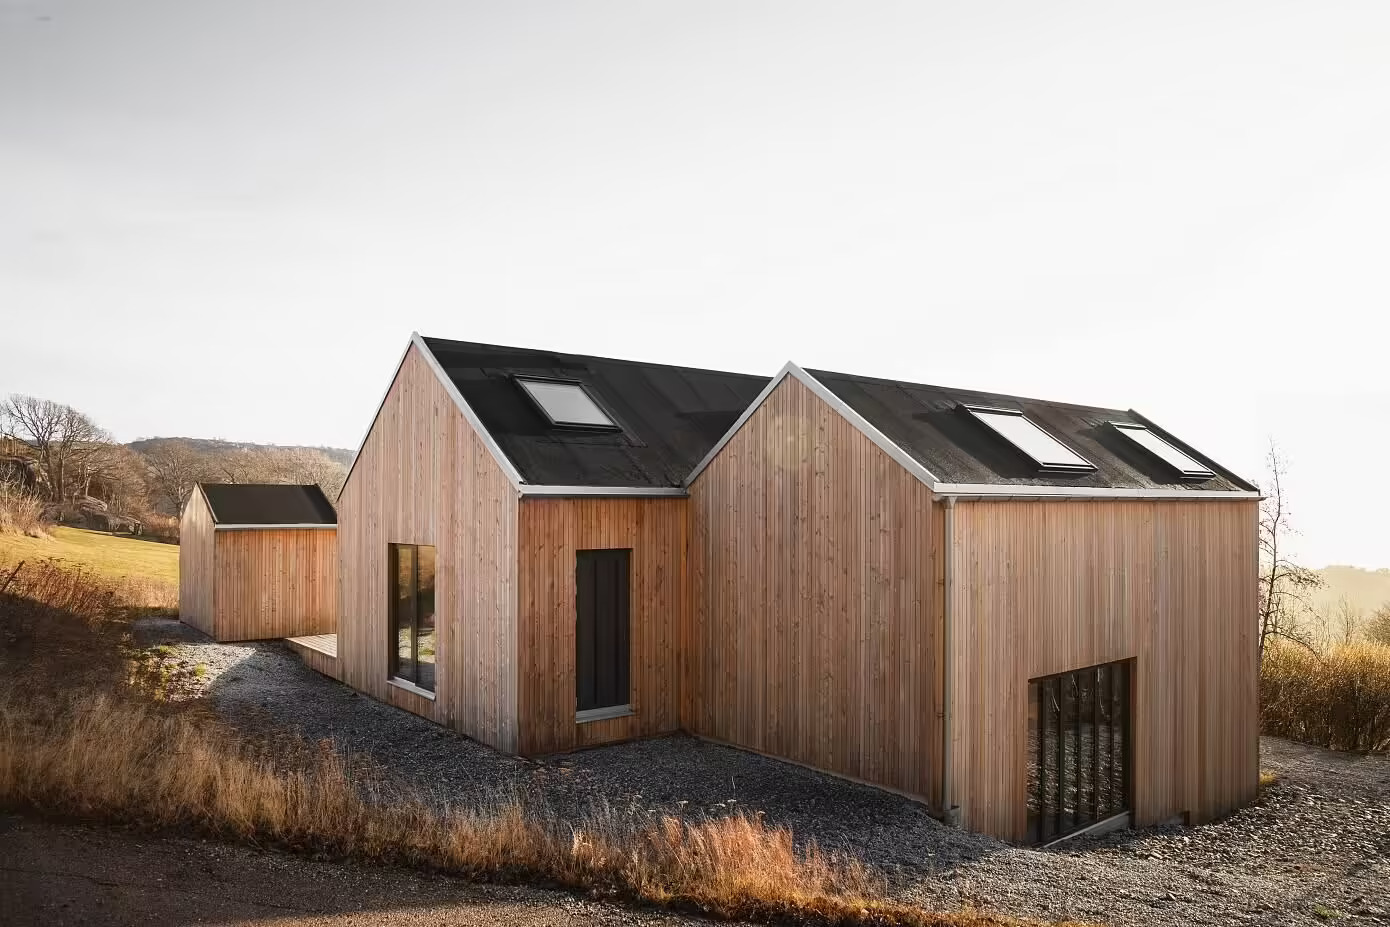 Archipelago to nowoczesny dom wakacyjny by Norm Architects in Szwecja